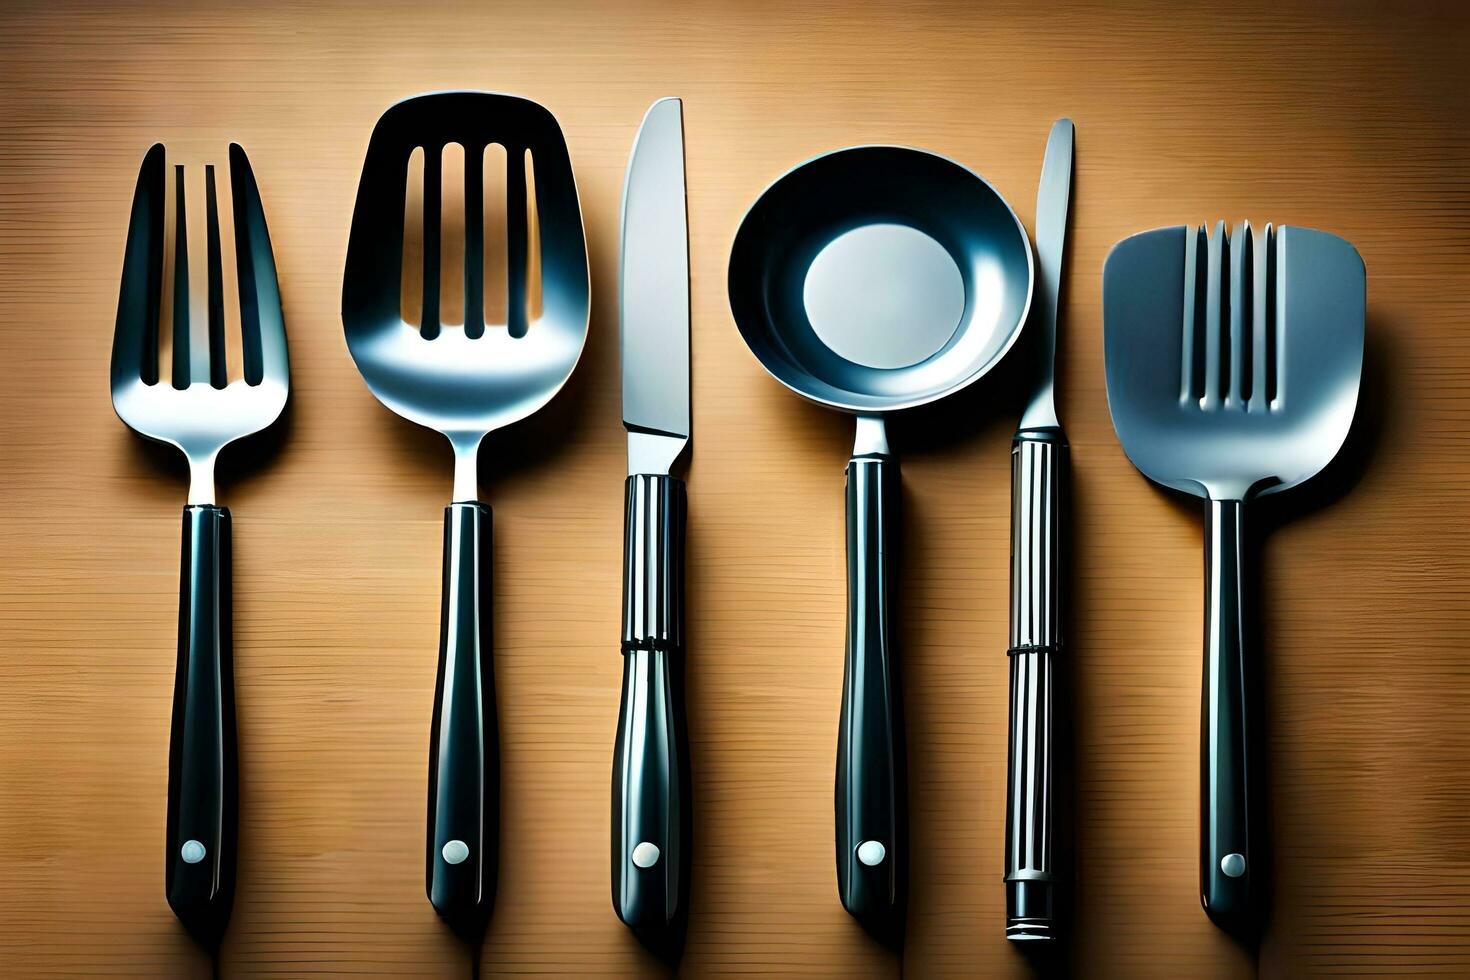 cinco diferente tipos de cocina utensilios son mostrado. generado por ai foto